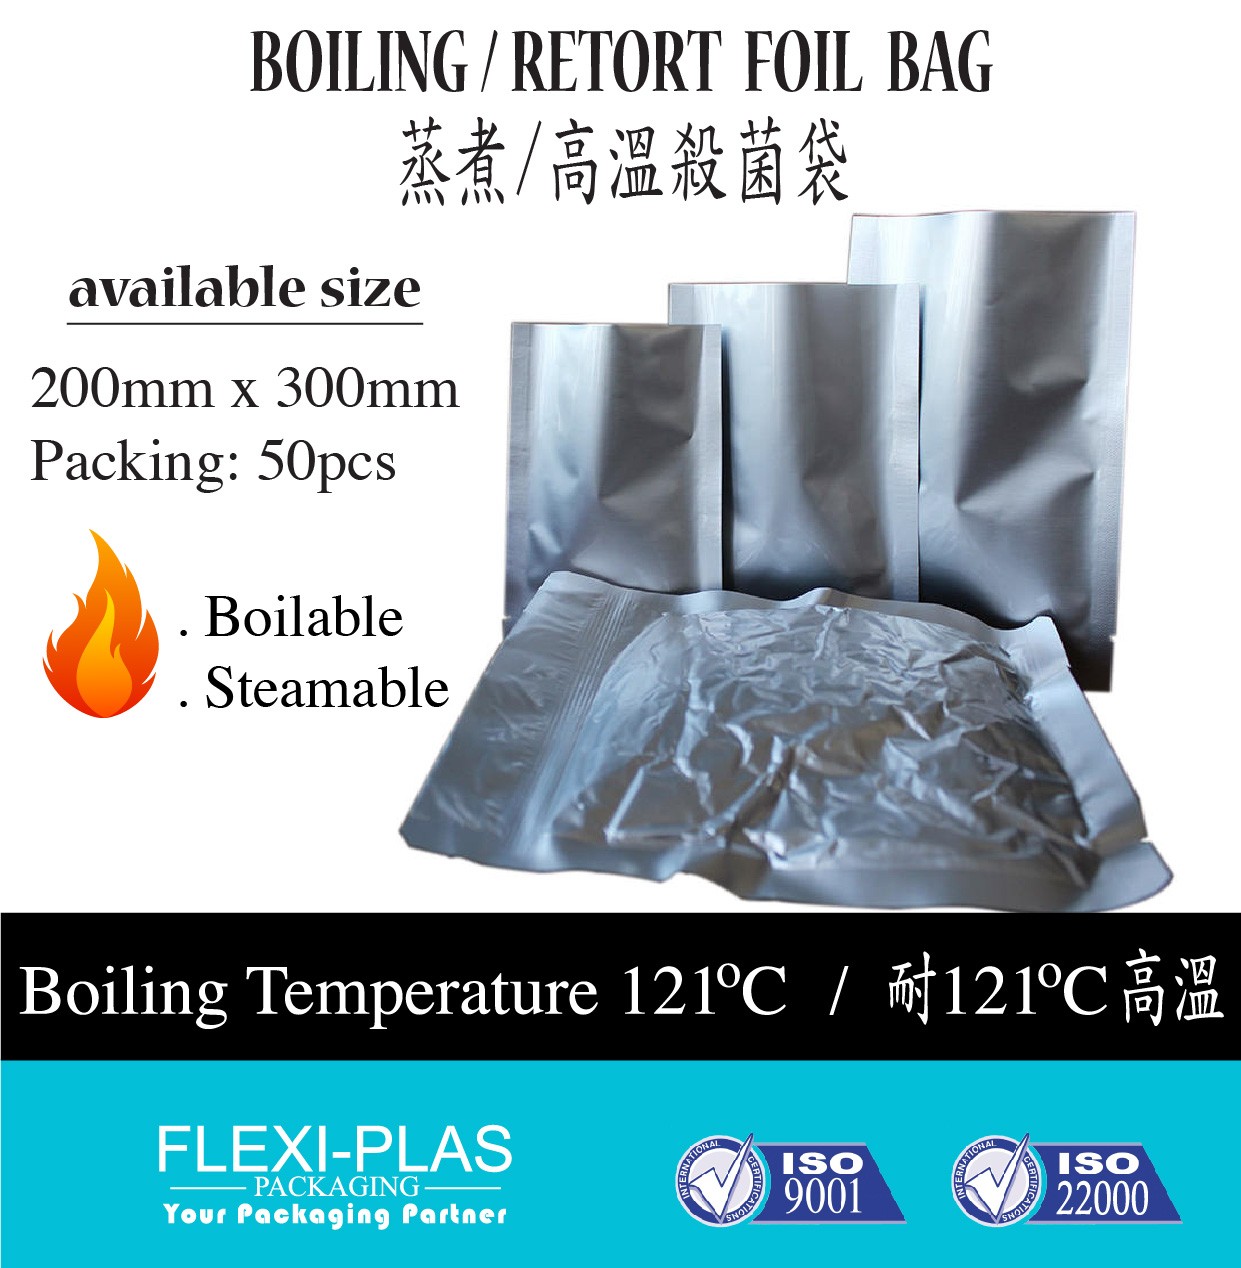 Boiling / Retort Foil Bag